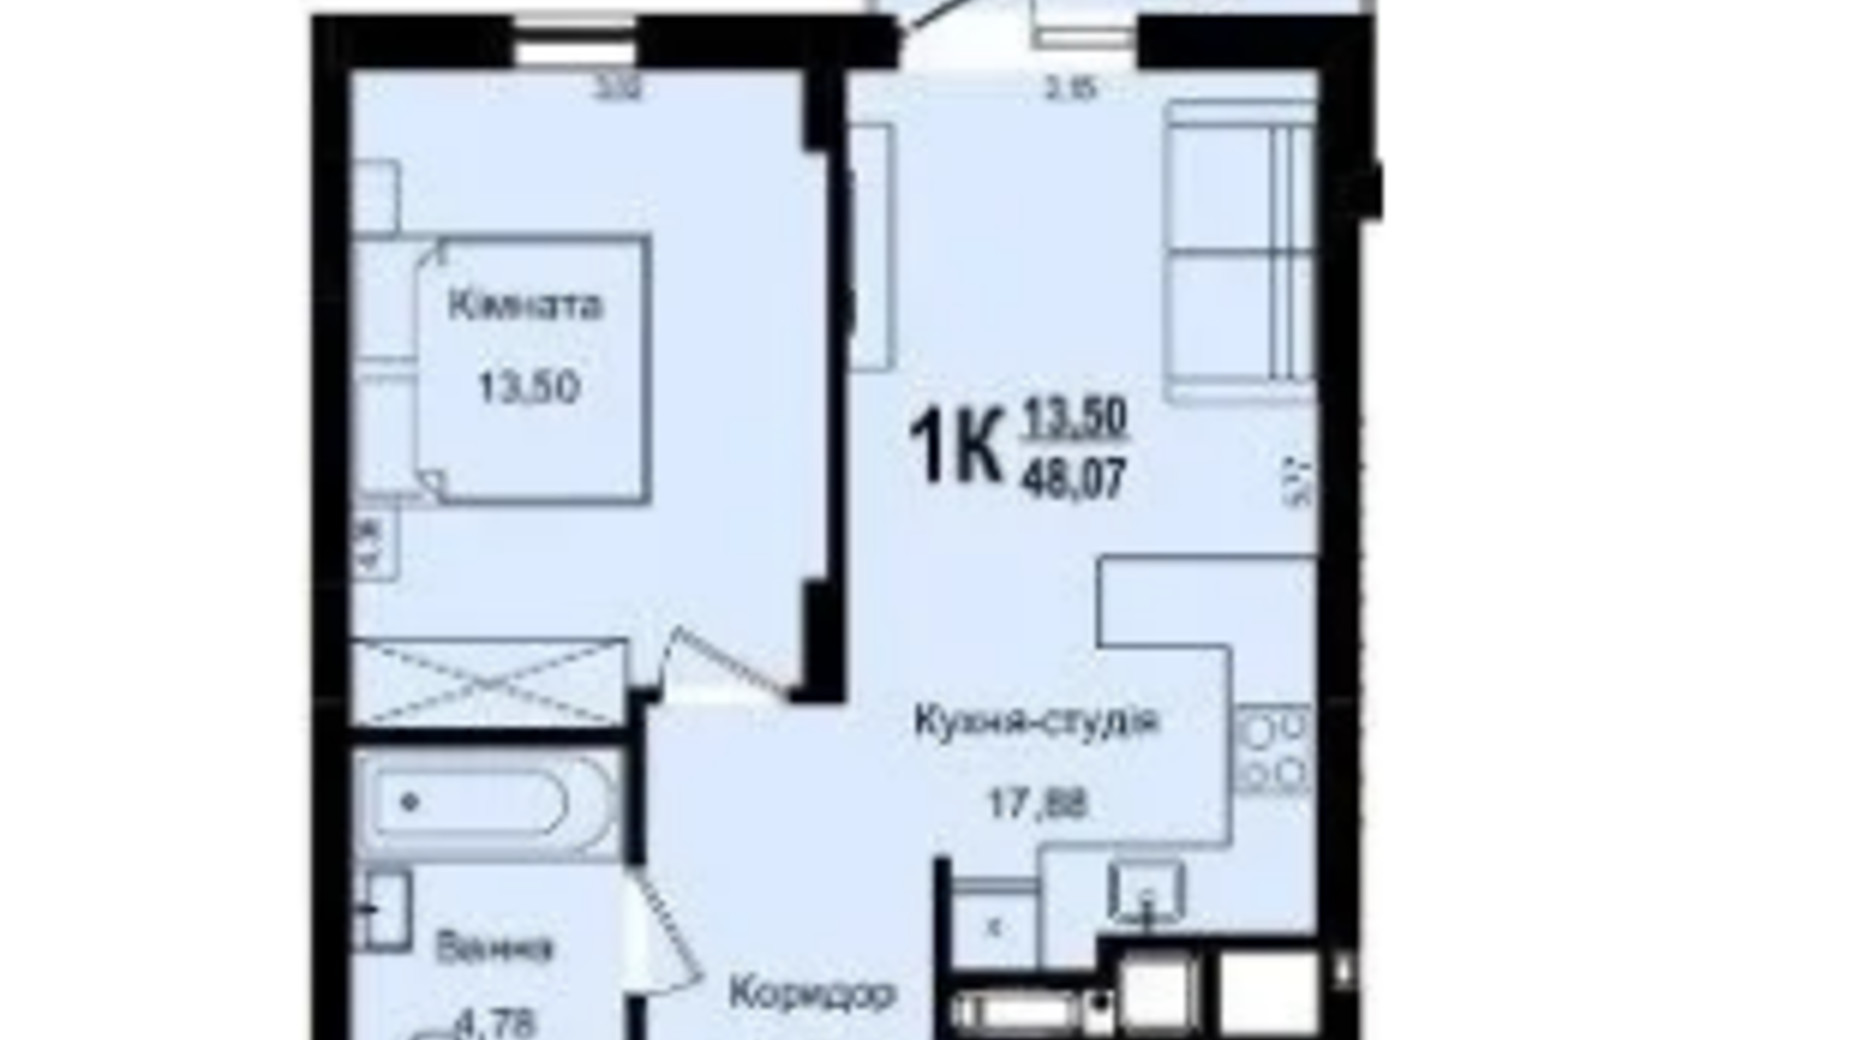 Планування 1-кімнатної квартири в ЖК Roksolana 48.07 м², фото 669252